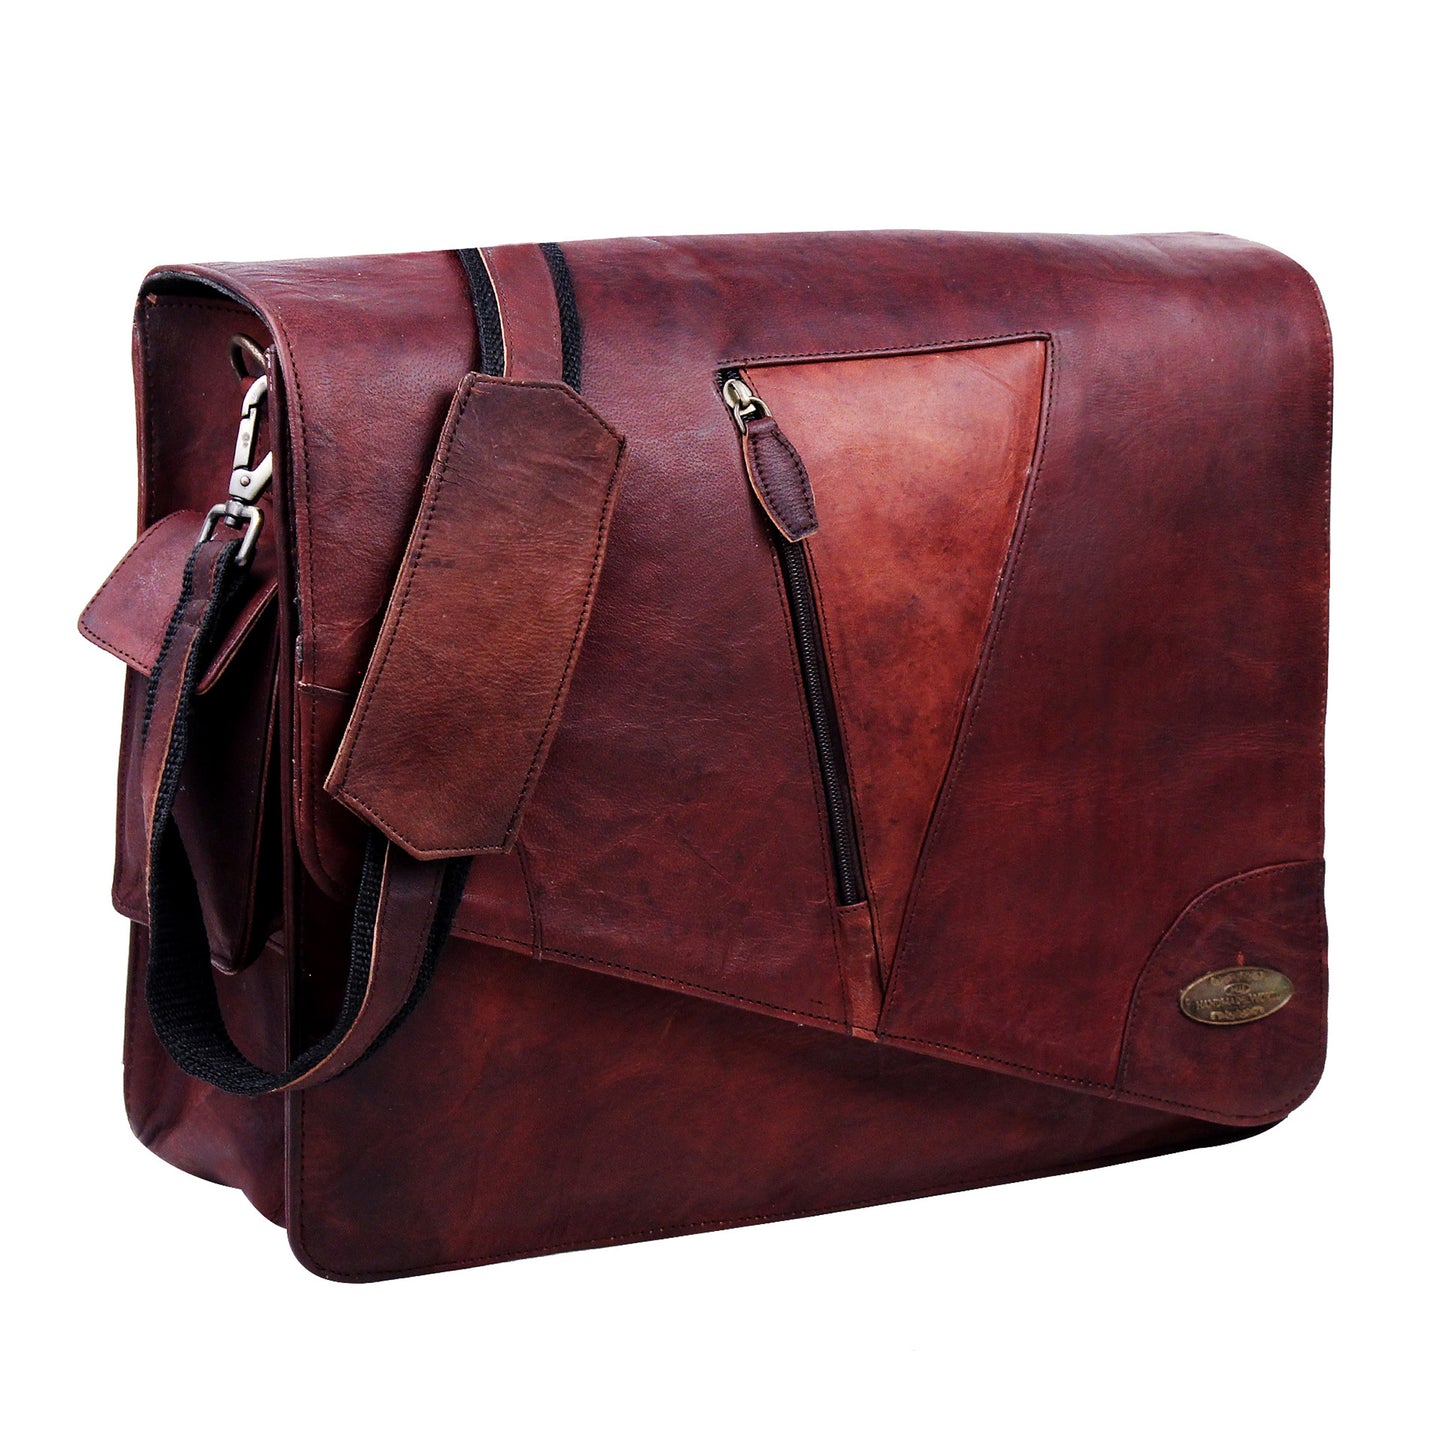 Genuine Leather Vintage Messenger Shoulder bag with Adjustable Bag